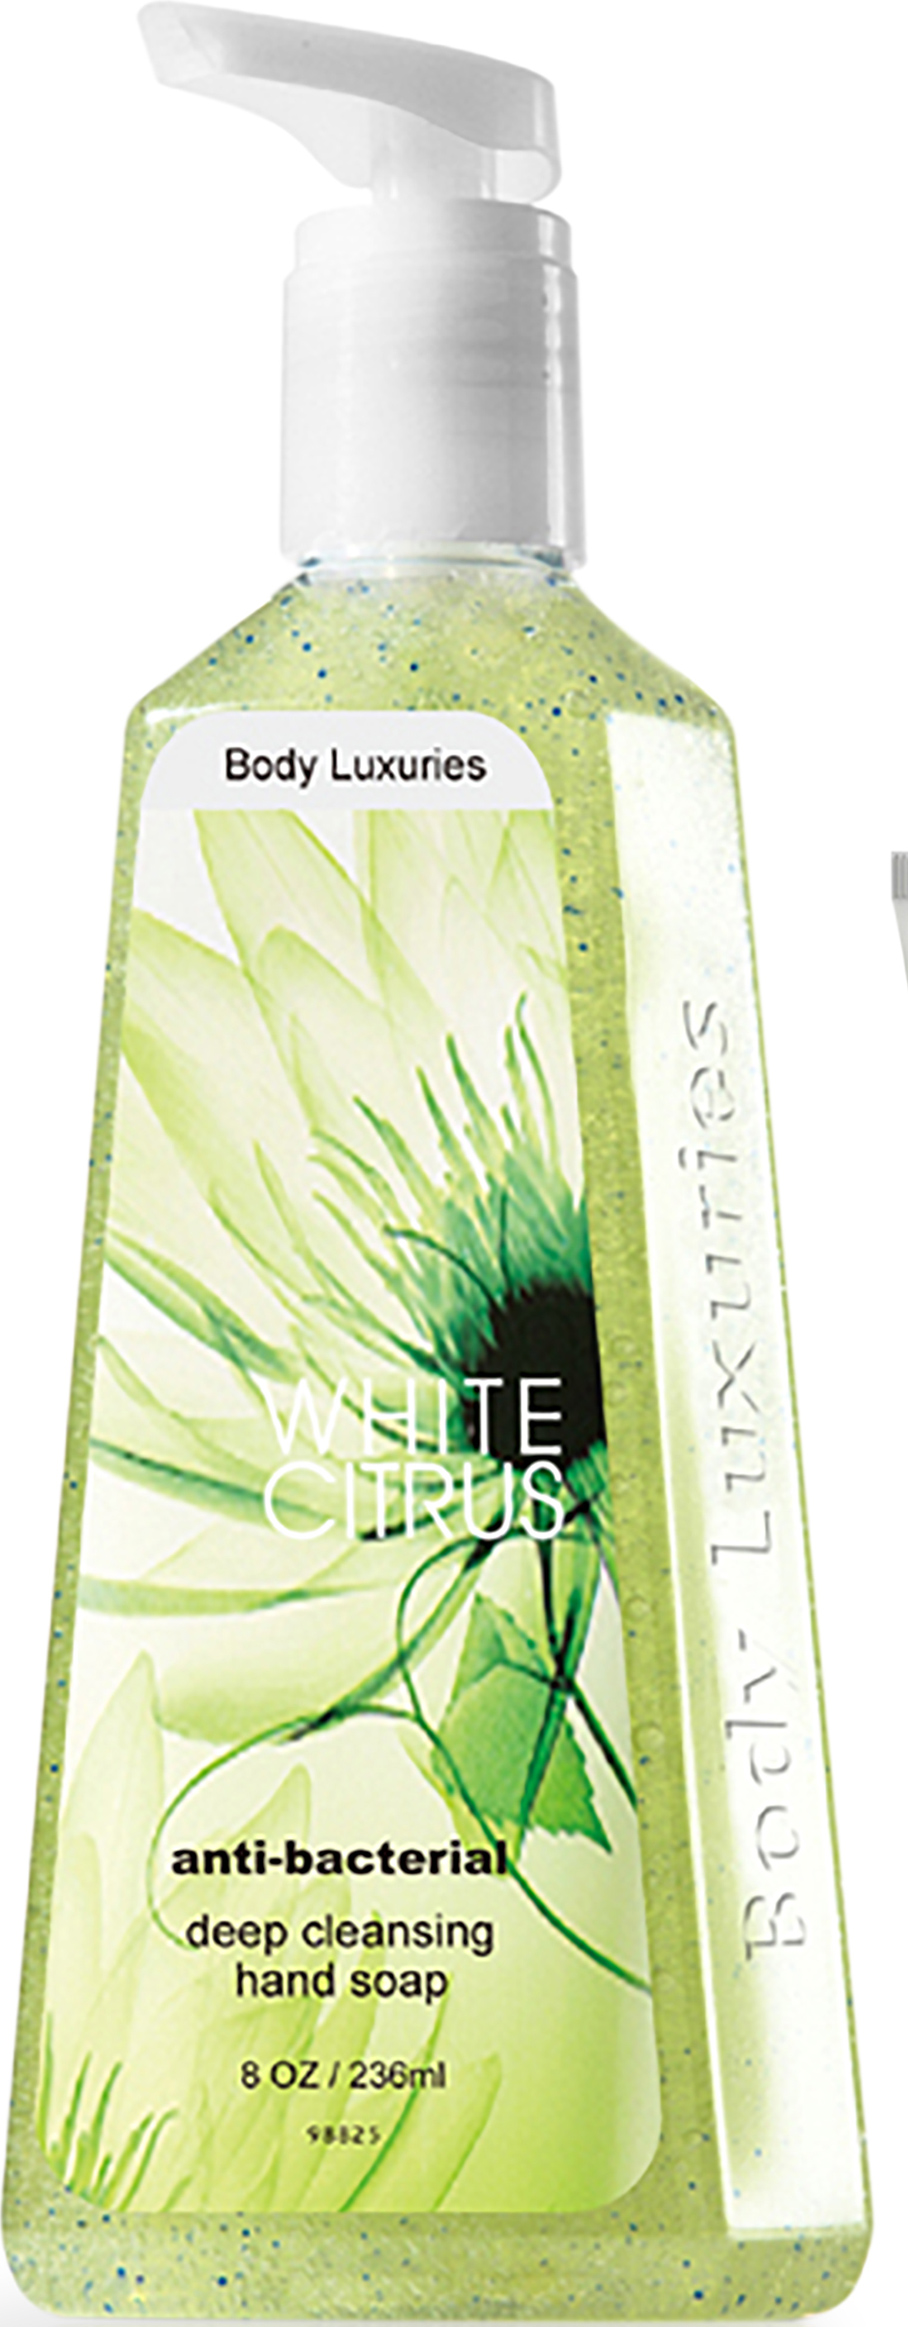 Body Luxuries White Citrus Handtvål 236ml